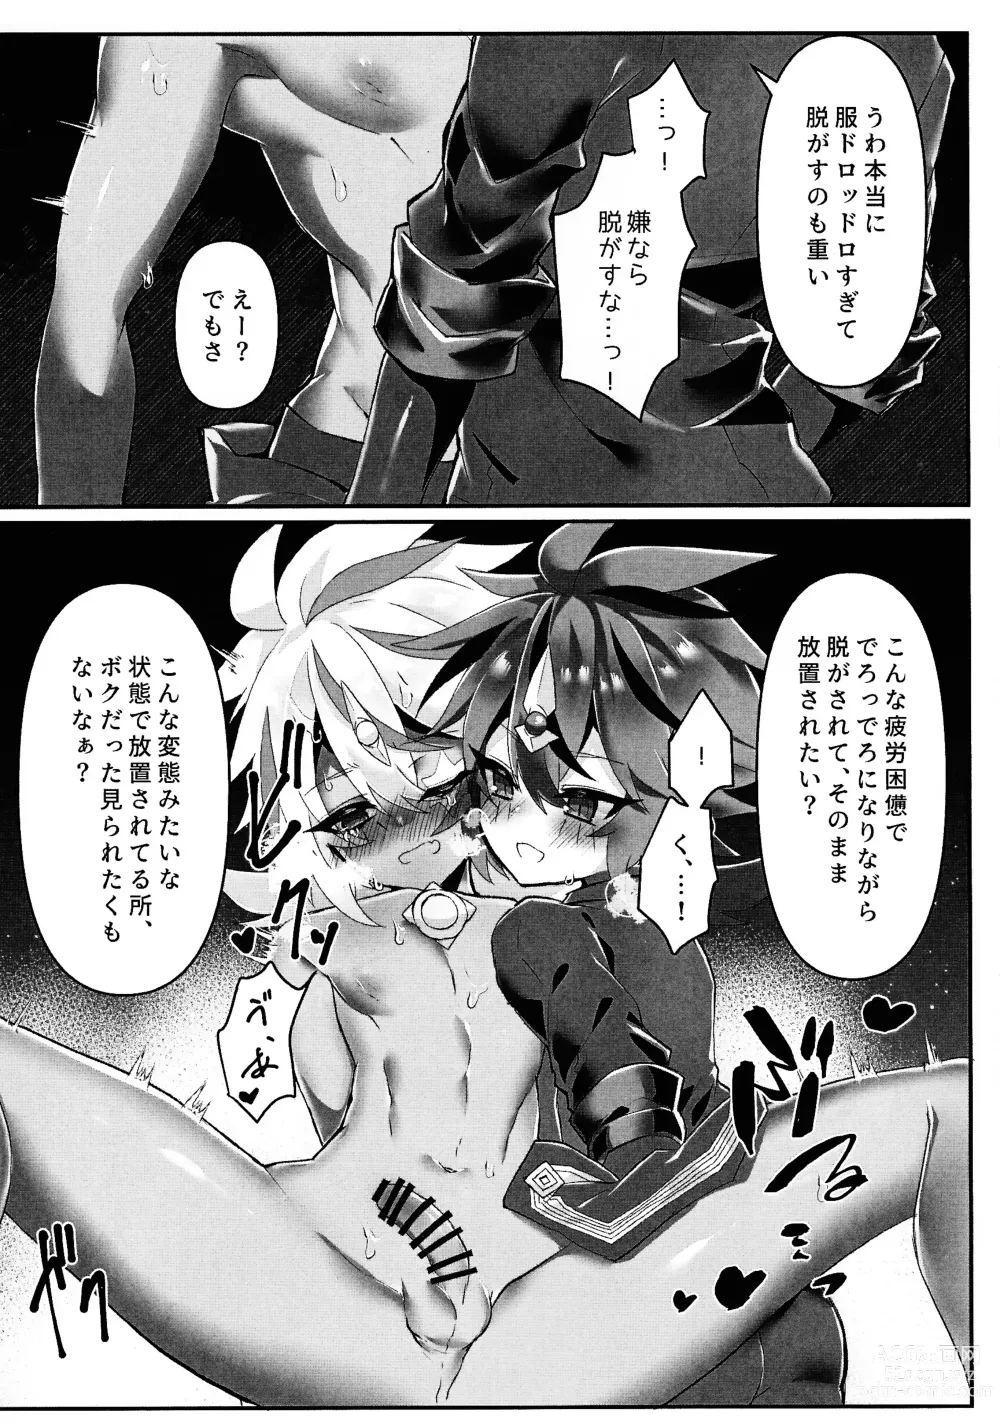 Page 10 of doujinshi Toru ● sozai wa o konomi de.